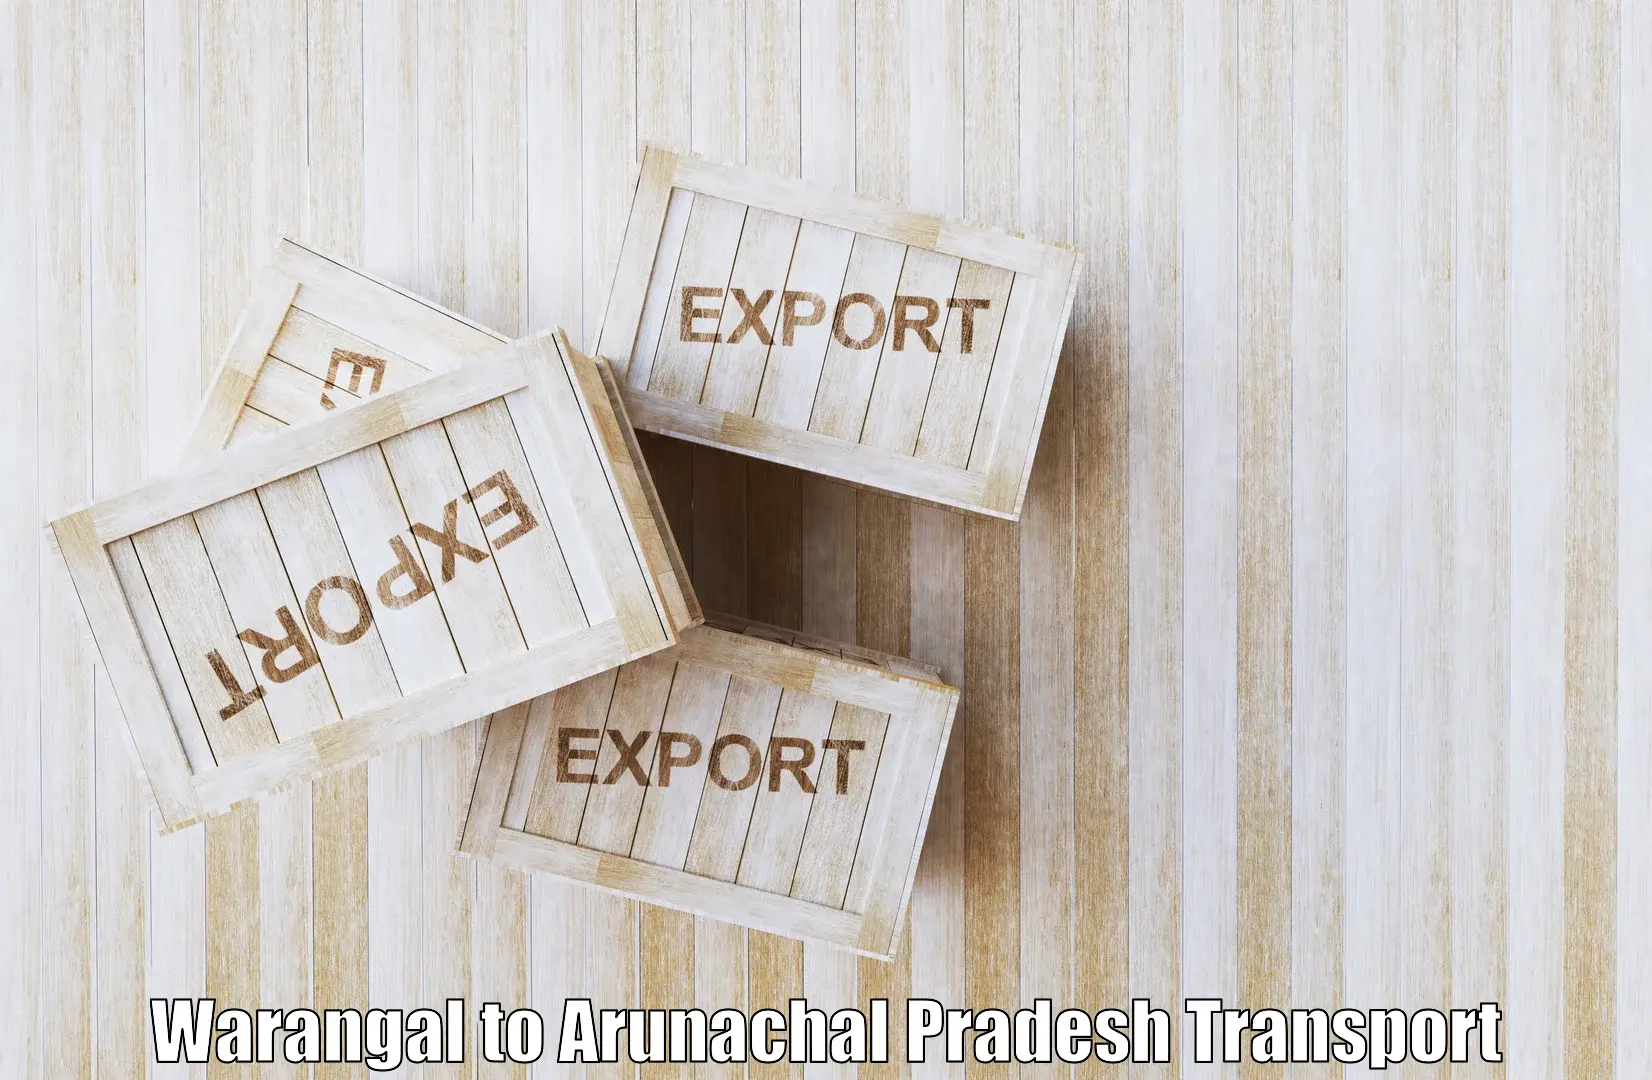 Transportation services Warangal to Arunachal Pradesh